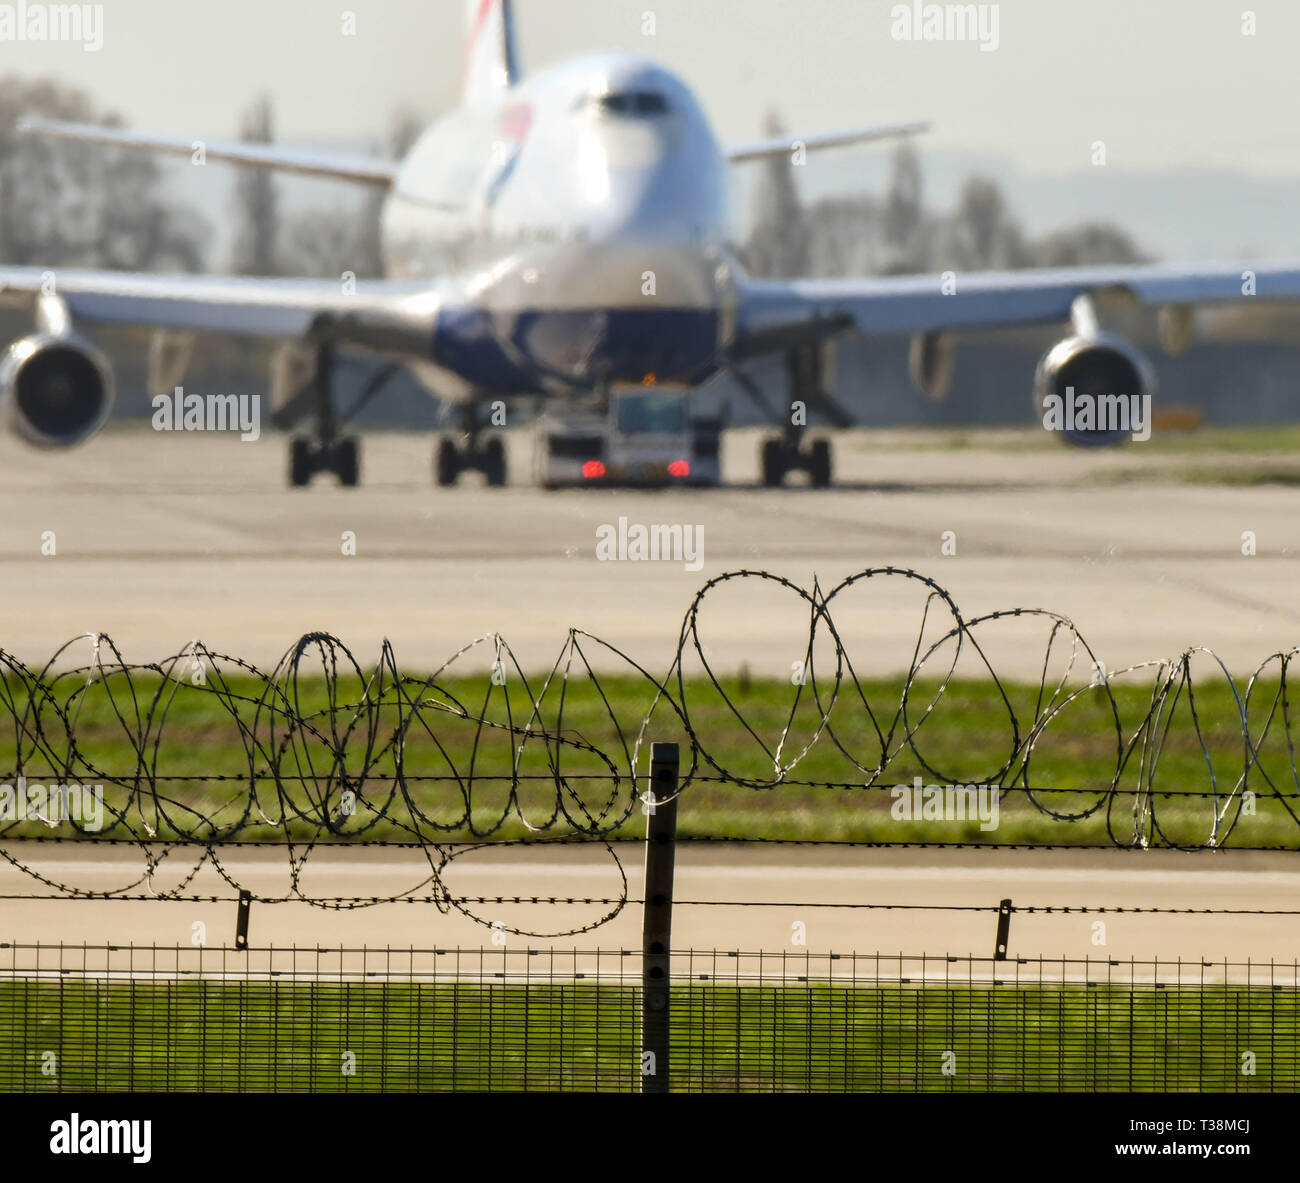 Londra, Inghilterra - Marzo 2019: sicurezza barriera di filo spinato intorno al perimetro aeroportuale di Londra Heathrow Airport. Un aereo di linea è in background Foto Stock